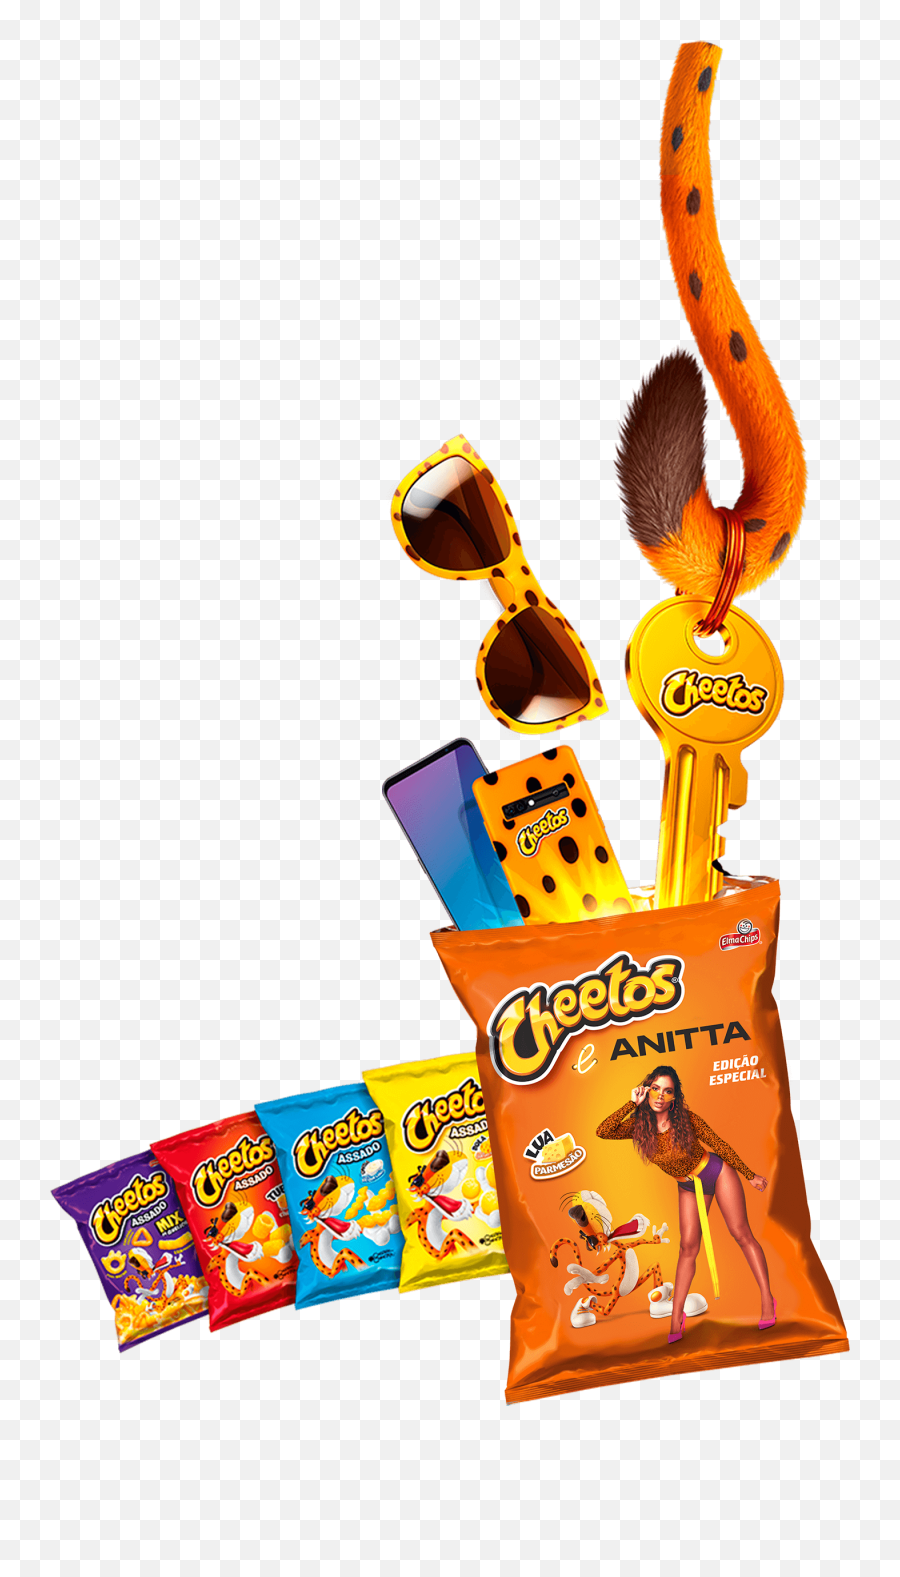 Promoção Cheetos U0026 Anitta Partiu Festa - Graphics Png,Chester Cheetah Png